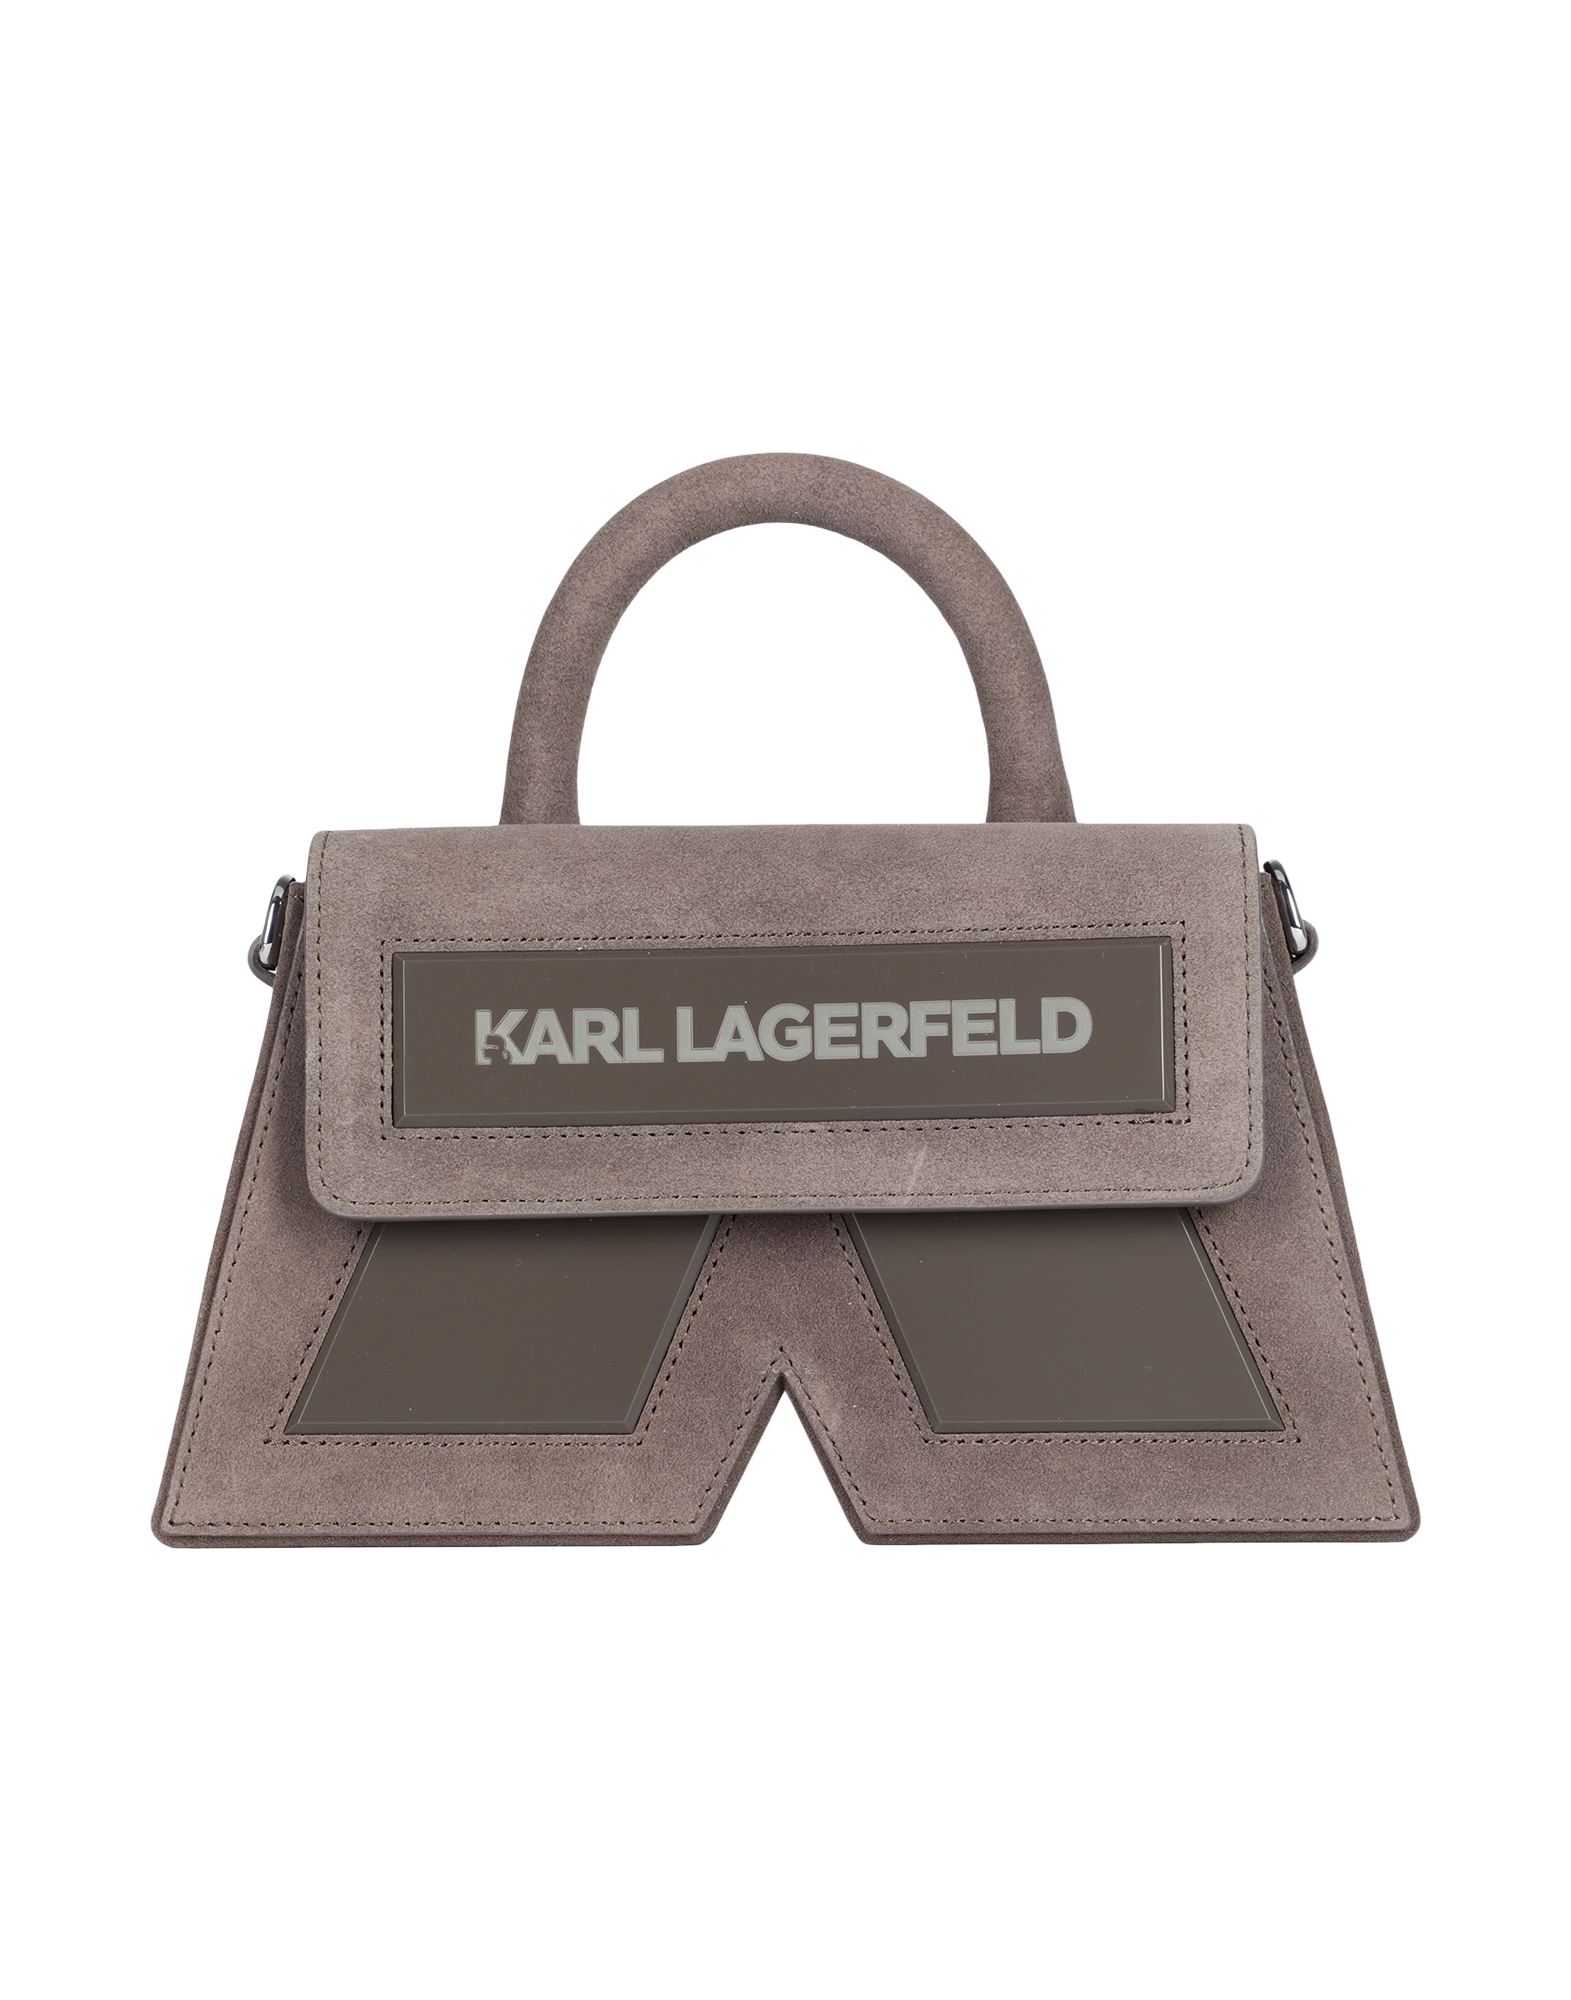 Karl Lagerfeld Handbags In Brown